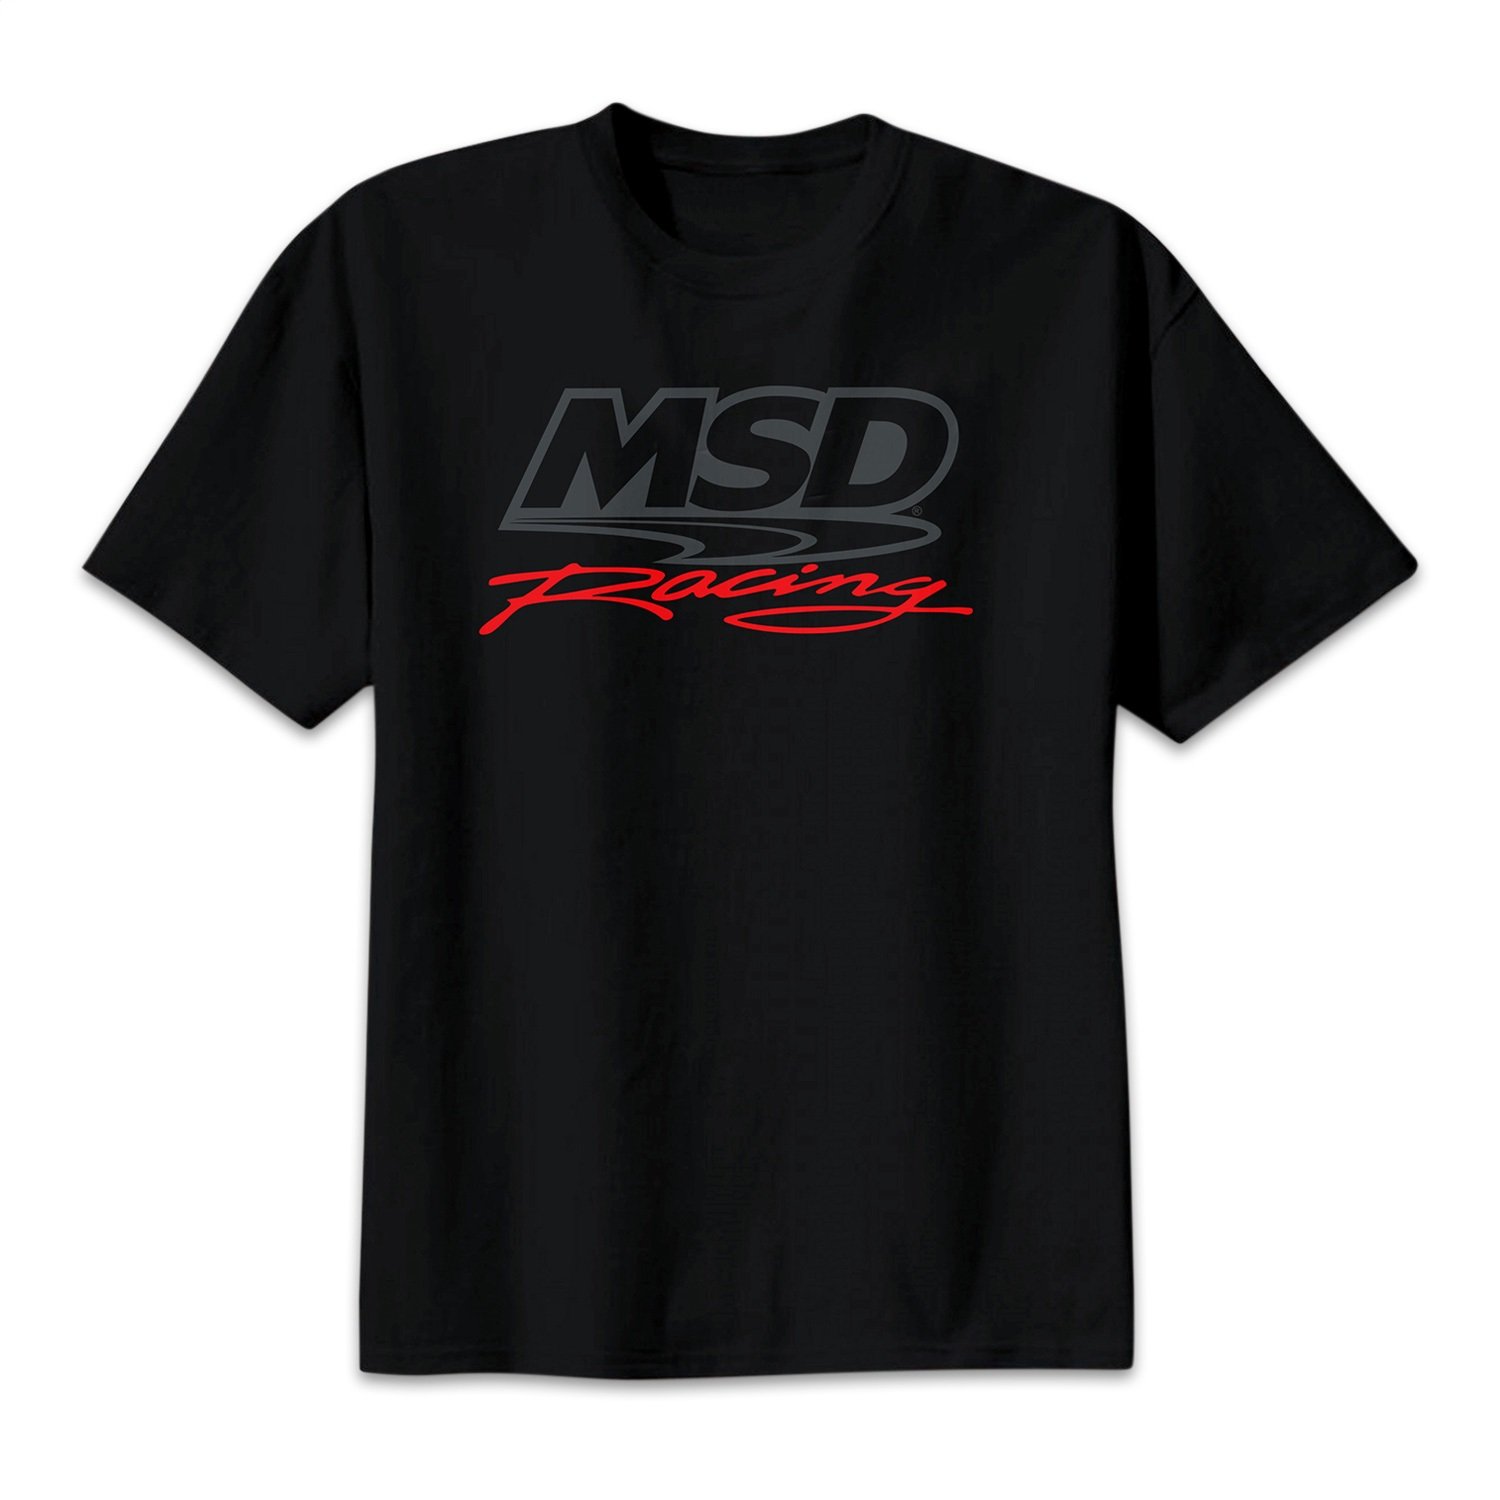 MSD Racing T-Shirt 2X-Large Black